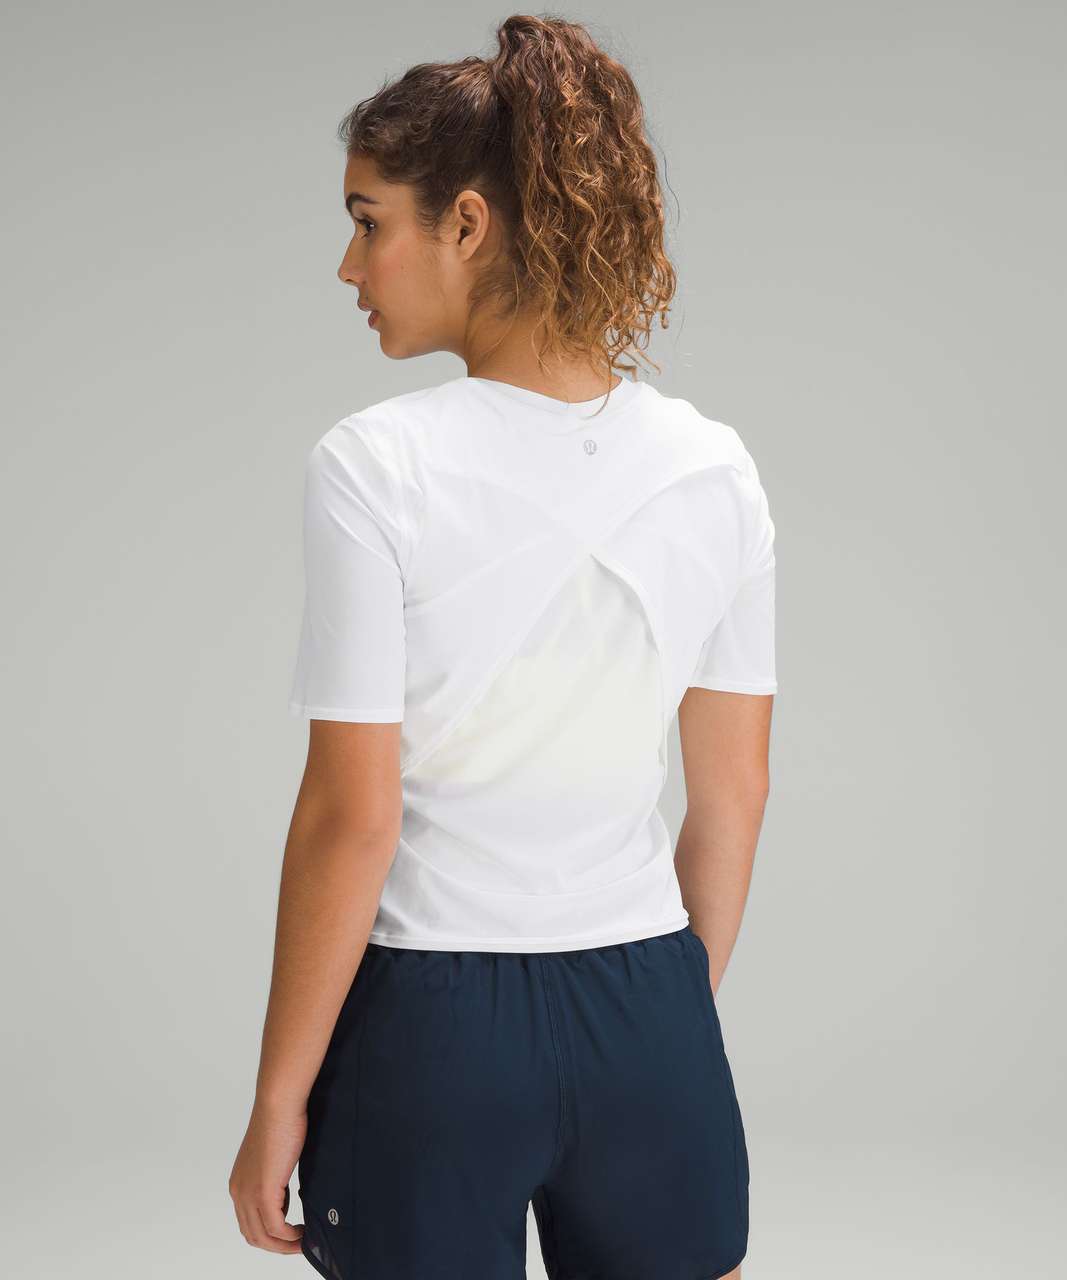 Lululemon UV Protection Fold-Over Running T-Shirt - White